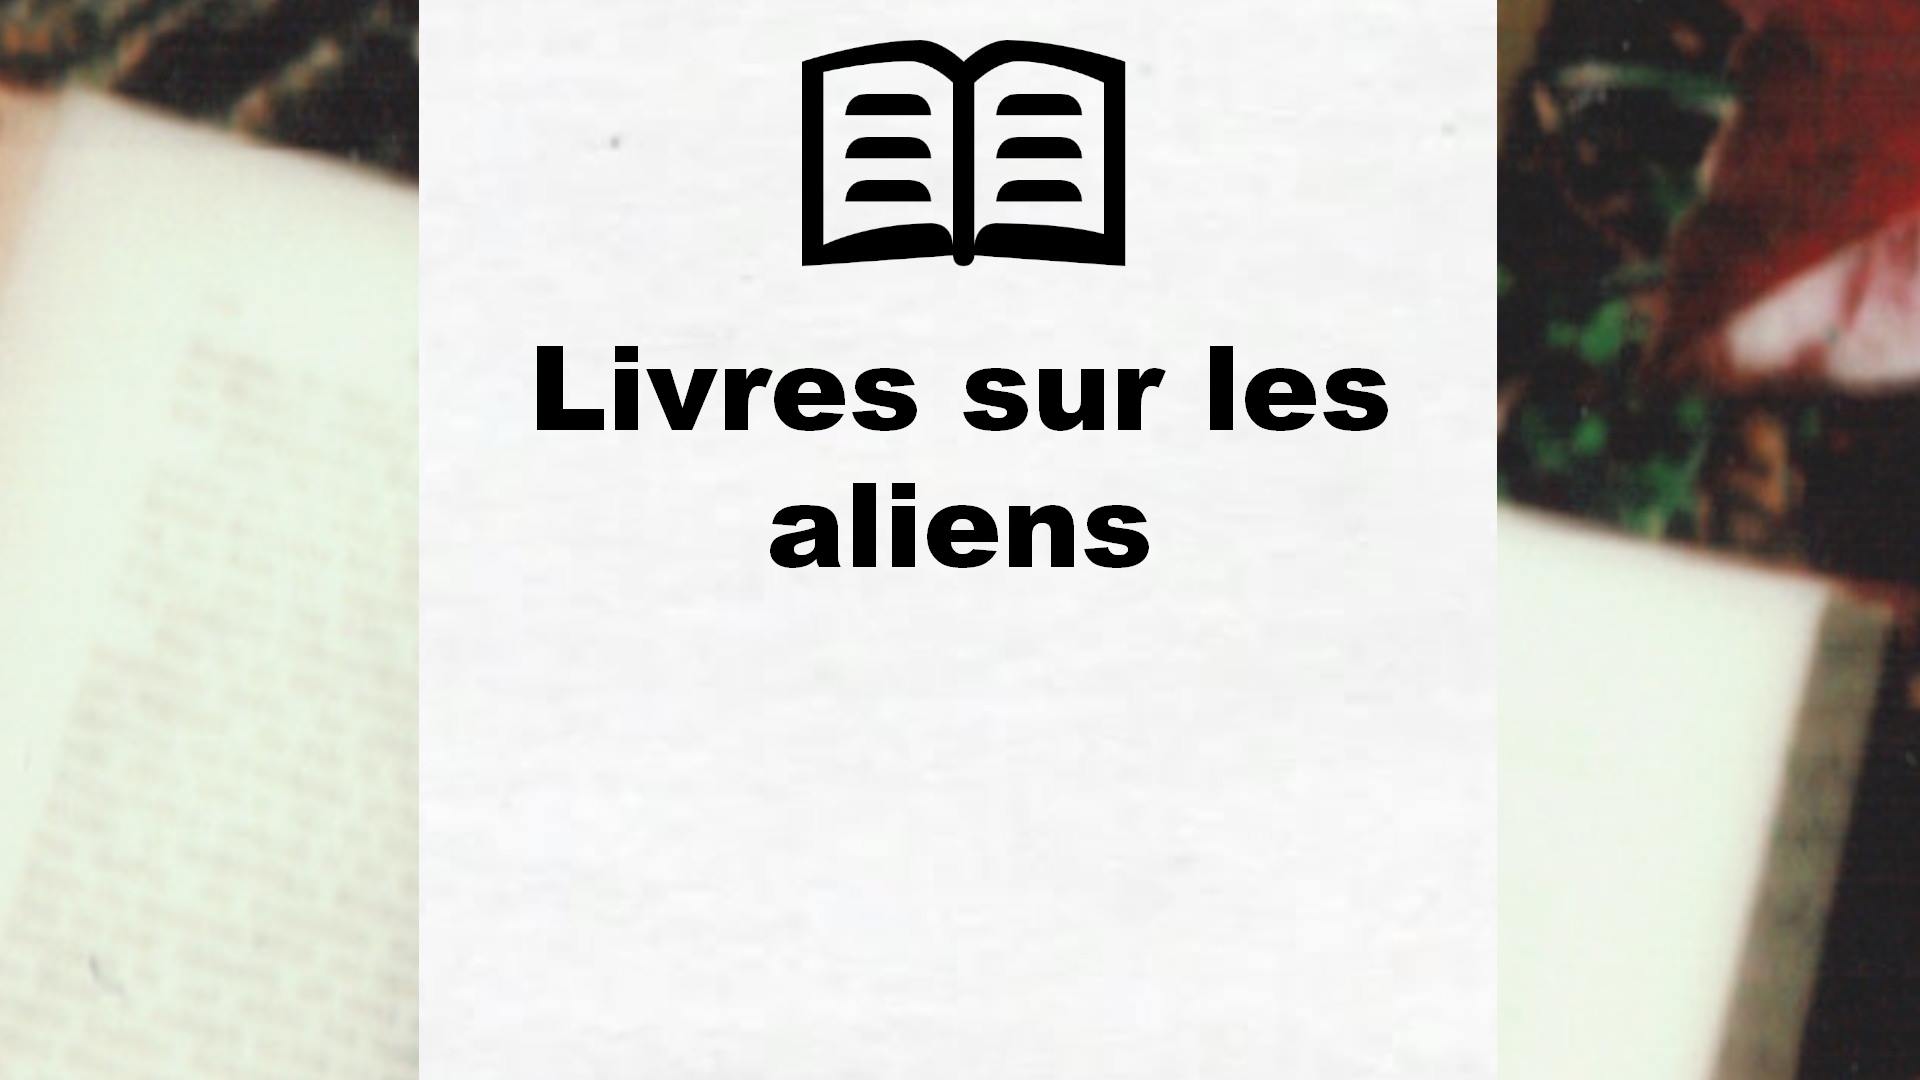 Livres sur les aliens